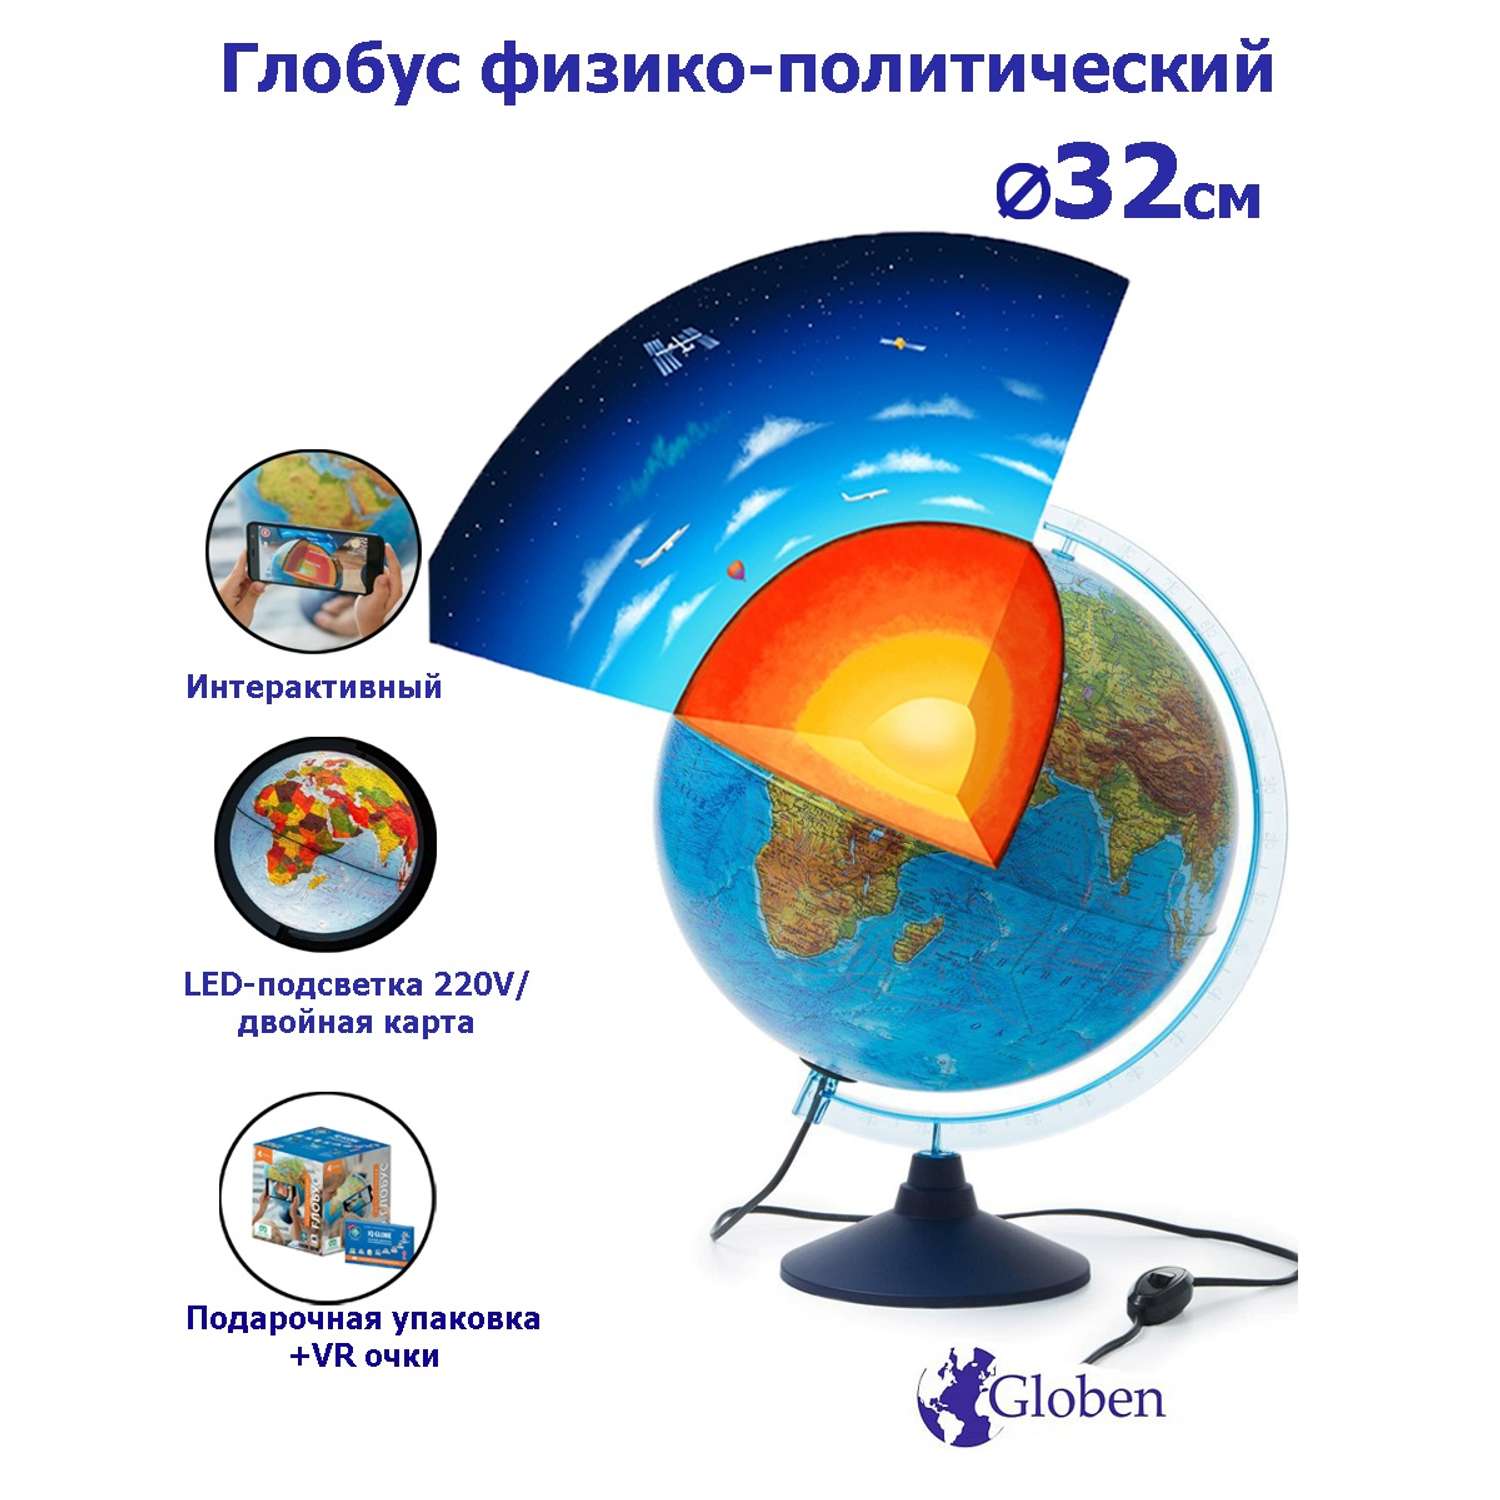 Интерактивный глобус Globen Земли физико-политический 32 см с LED-подсветкой VR очки - фото 1